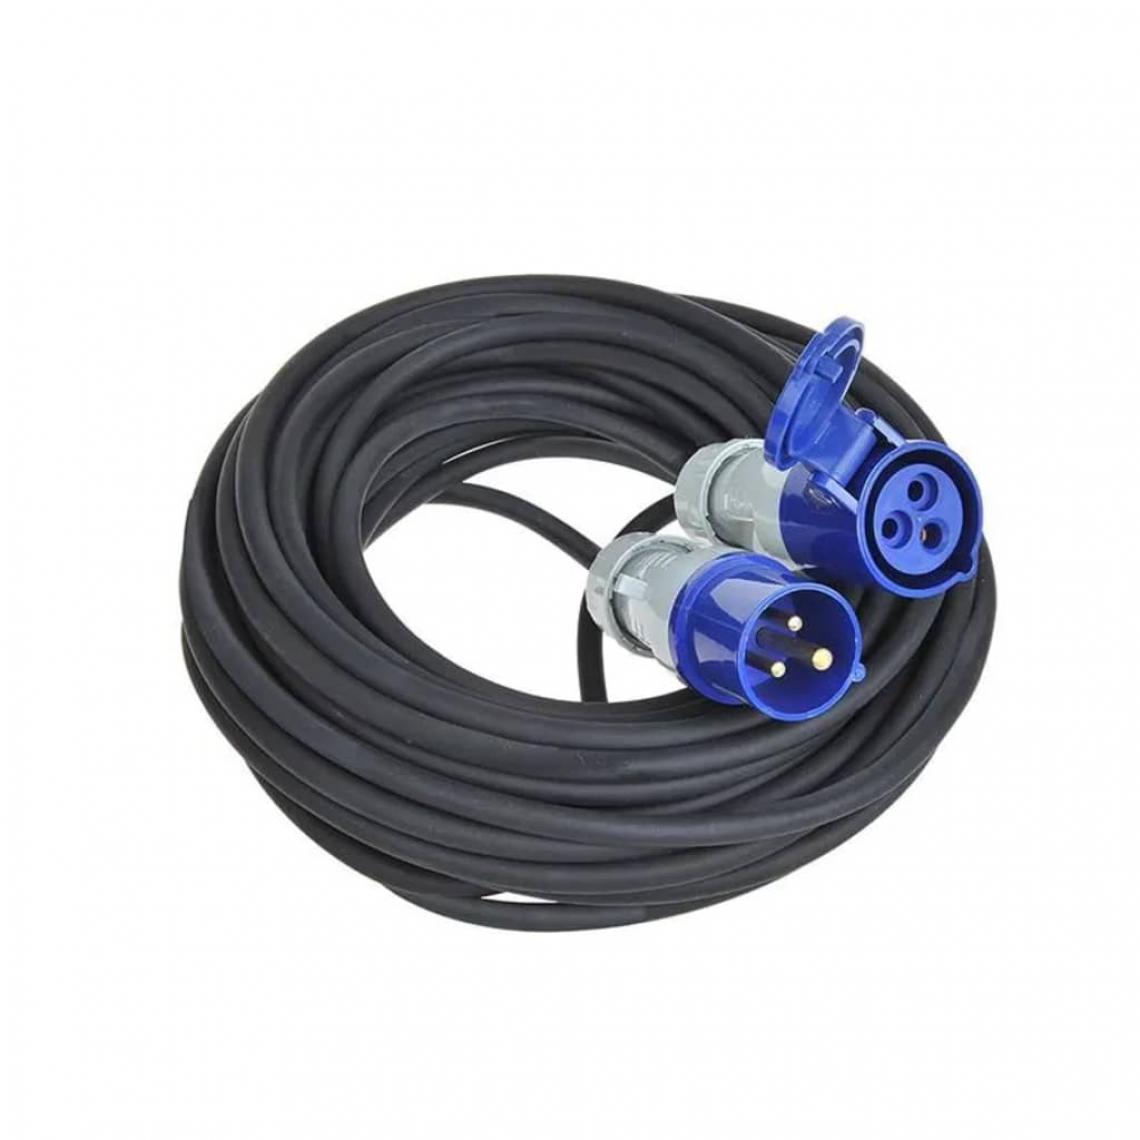 Icaverne - Contemporain Câbles pour appareils électroniques ligne Kampala ProPlus Rallonge électrique CEE 40 m 3 x 1,5 mm² - Fils et câbles électriques